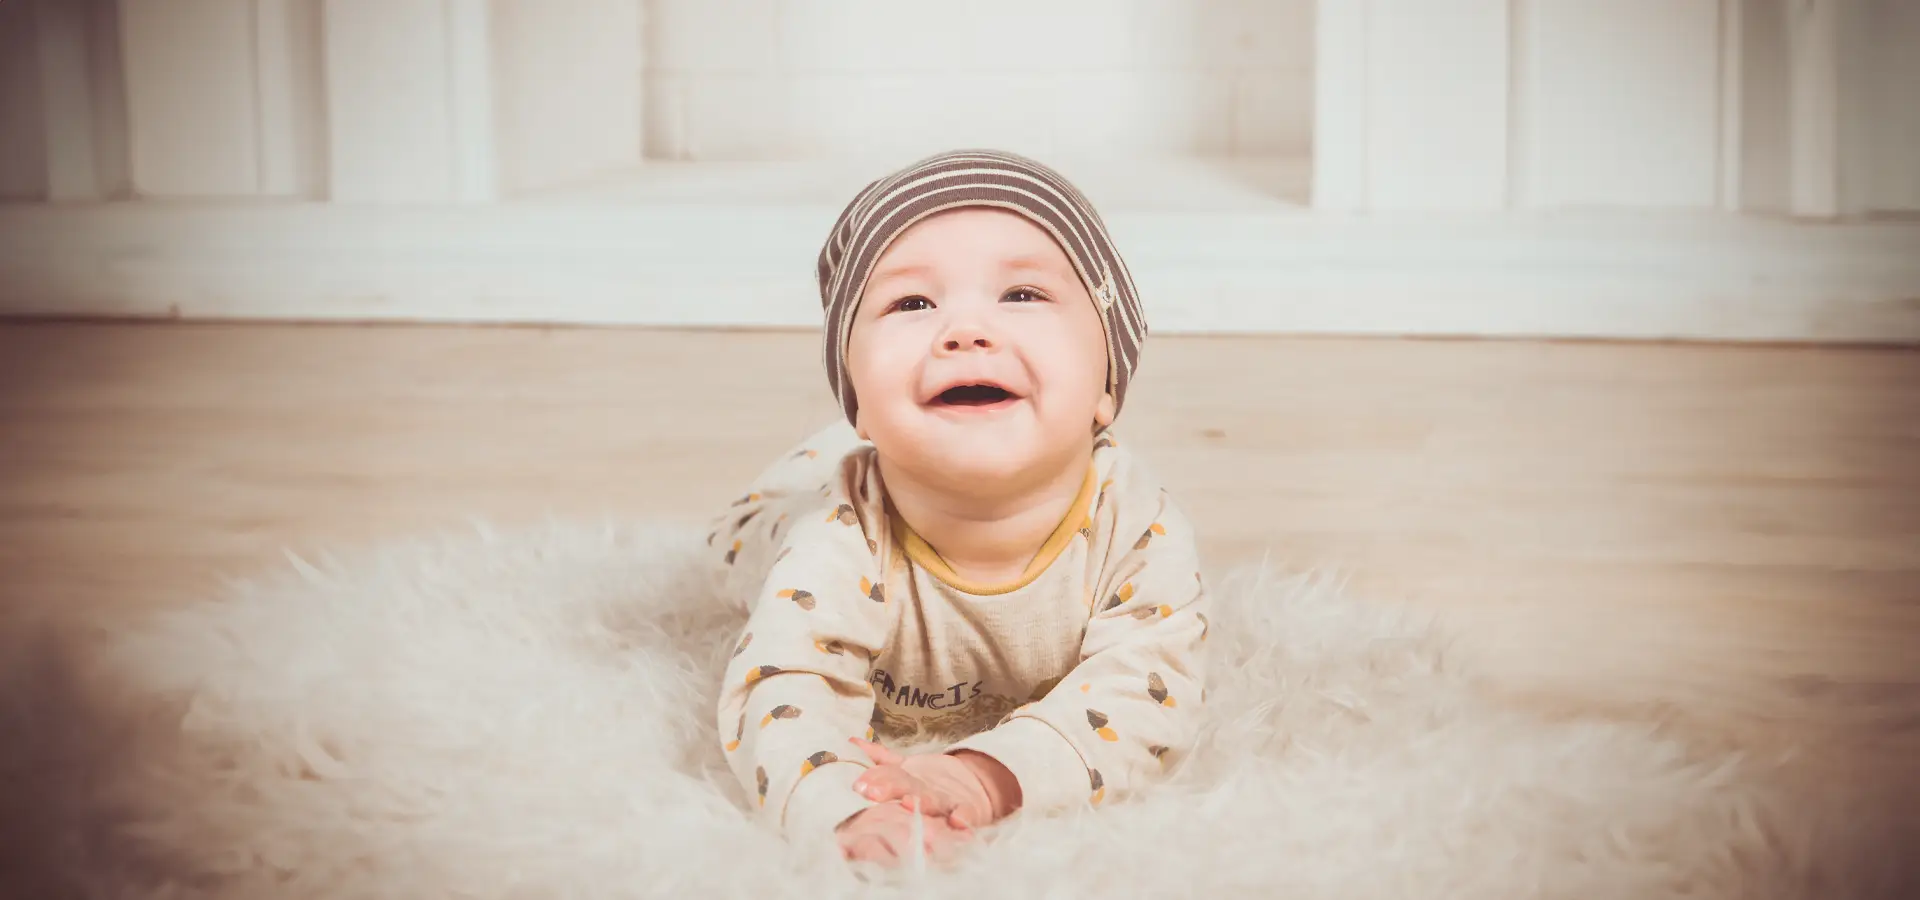 Lachendes Baby mit Mütze auf weißem Fell liegend.